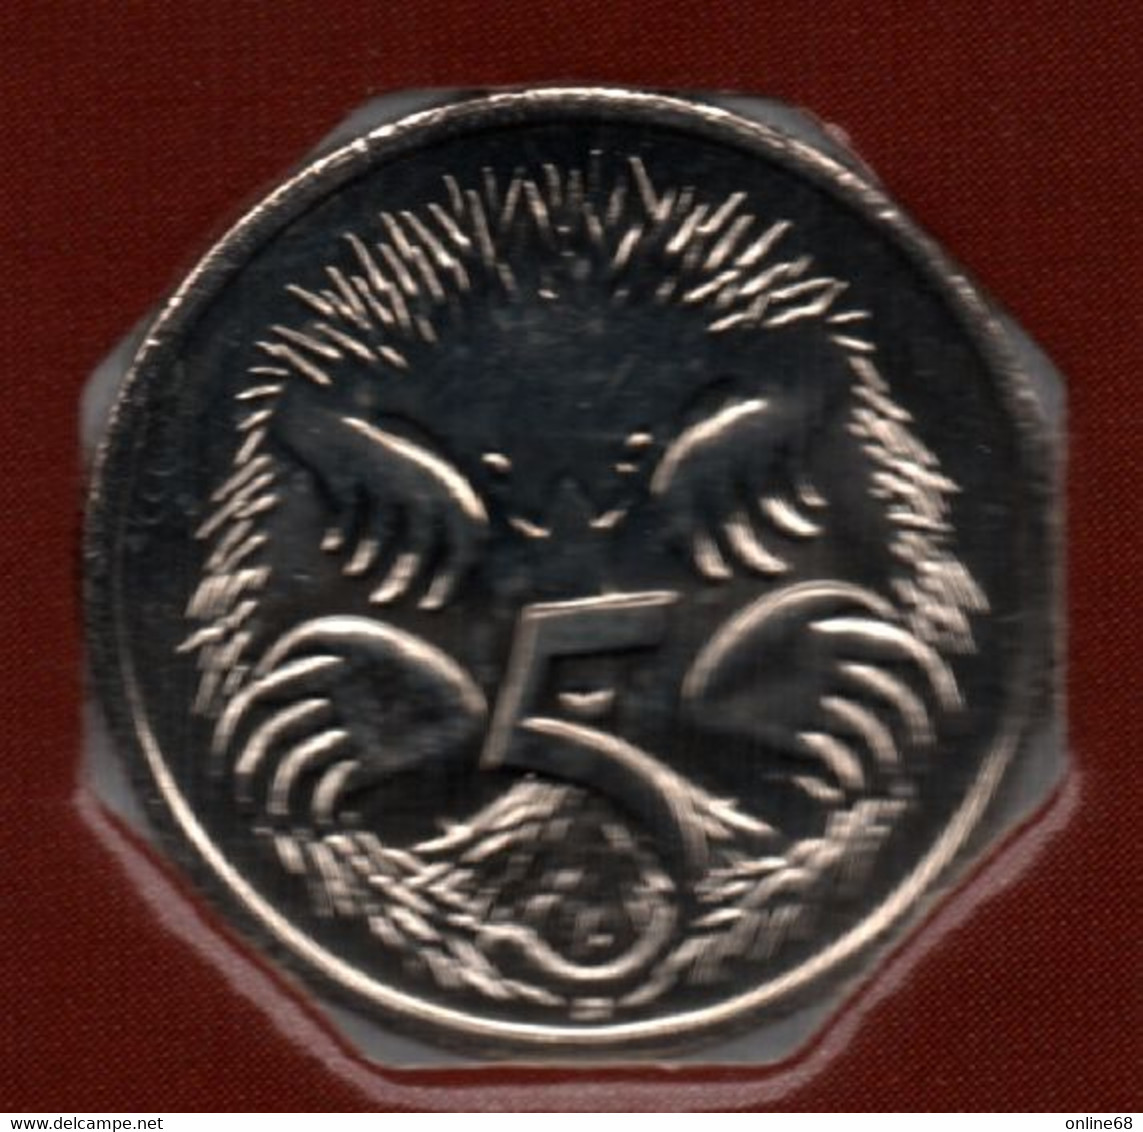 AUSTRALIA 5 CENTS 2005 KM# 401 Echidna  QEII - 5 Cents